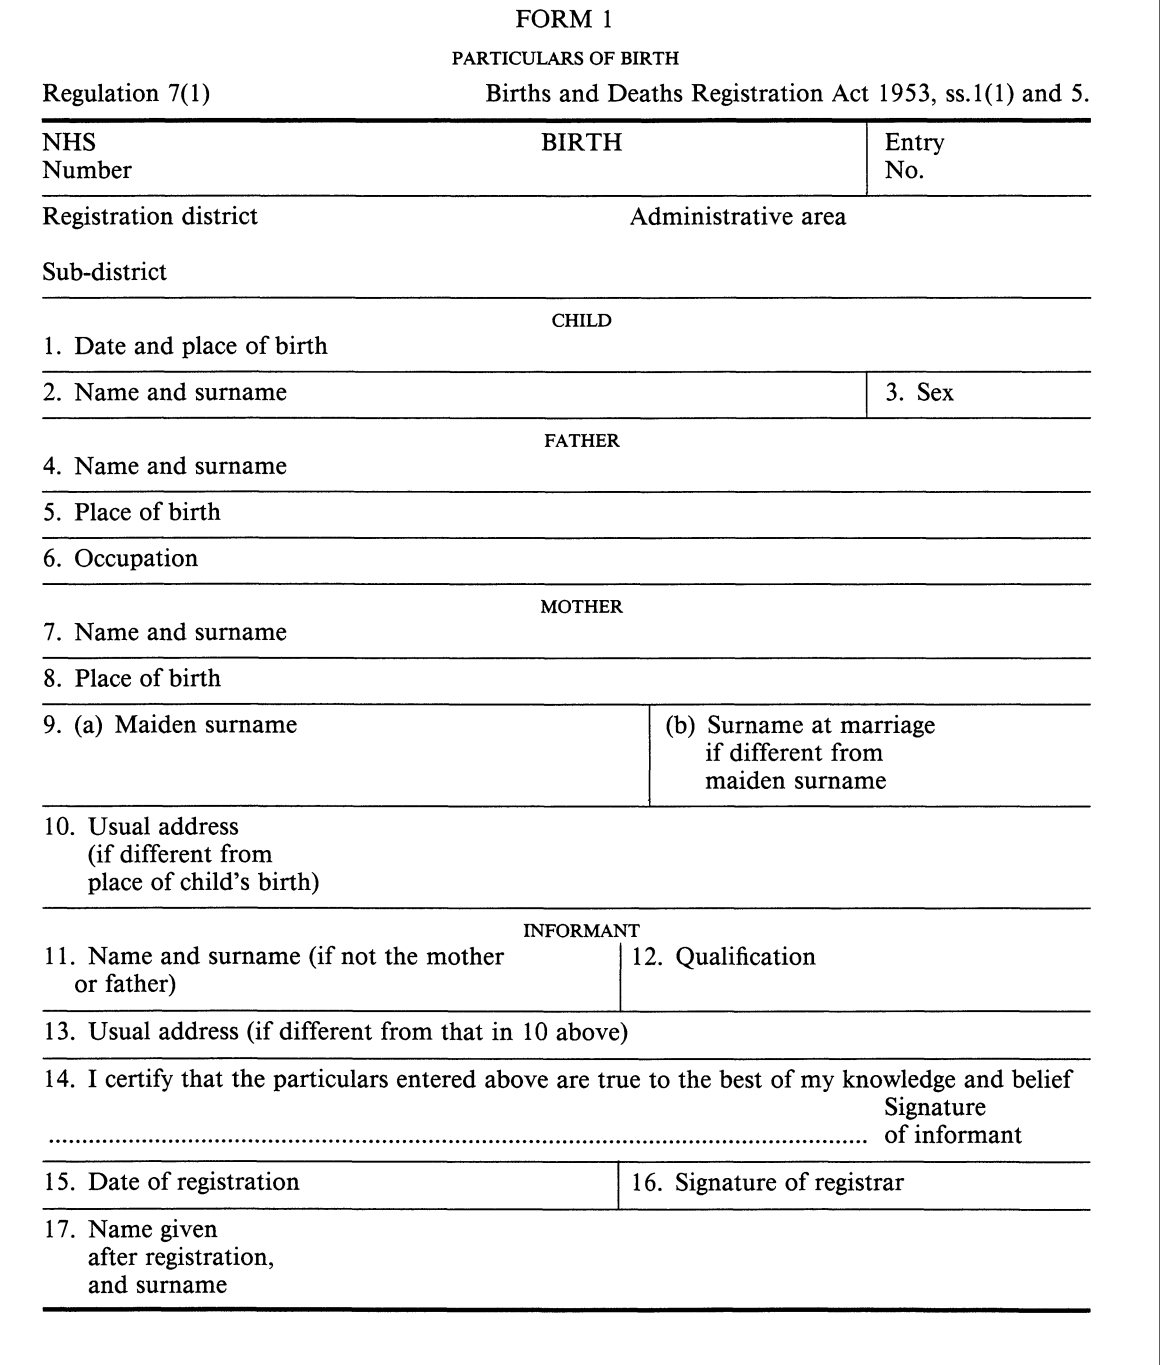 Birth registration Form 1 (England & Wales)